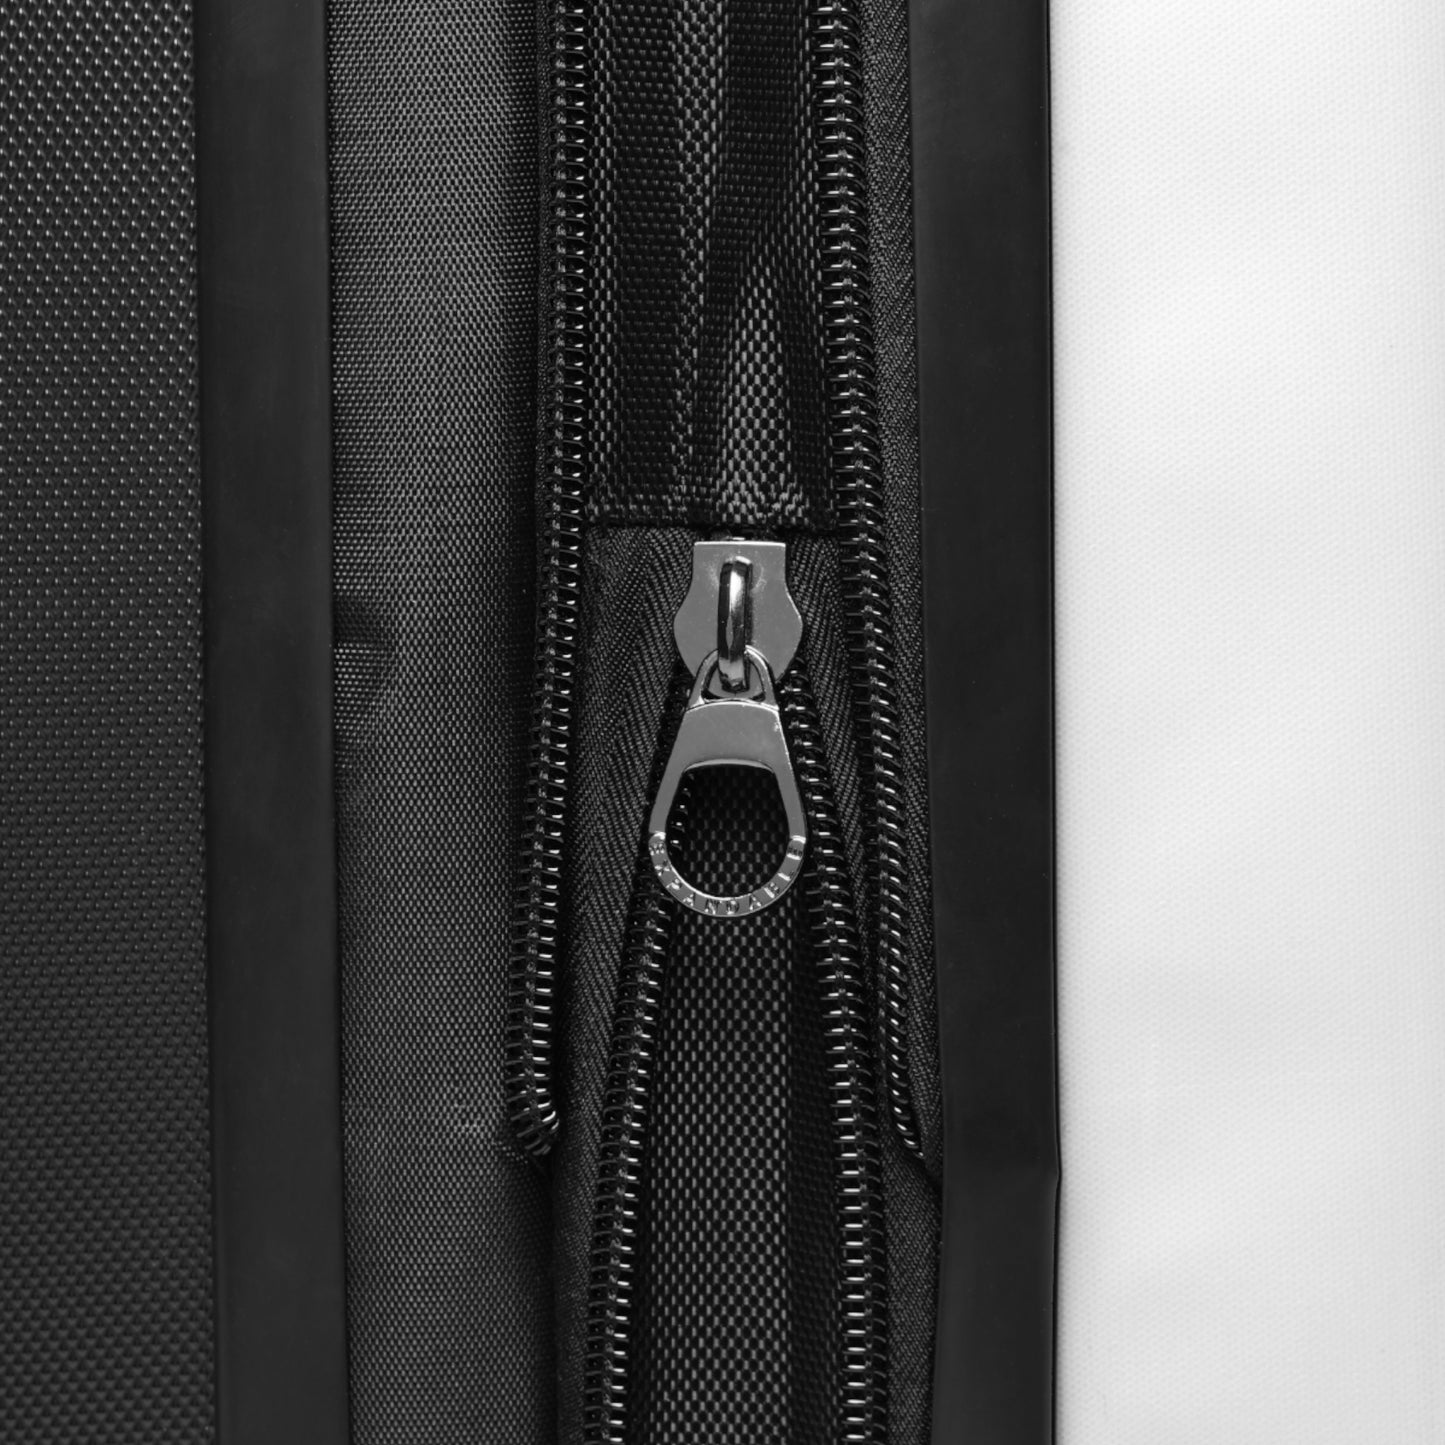 "Chic" Elegant Lady Suitcase-Carry on, Medium & Large